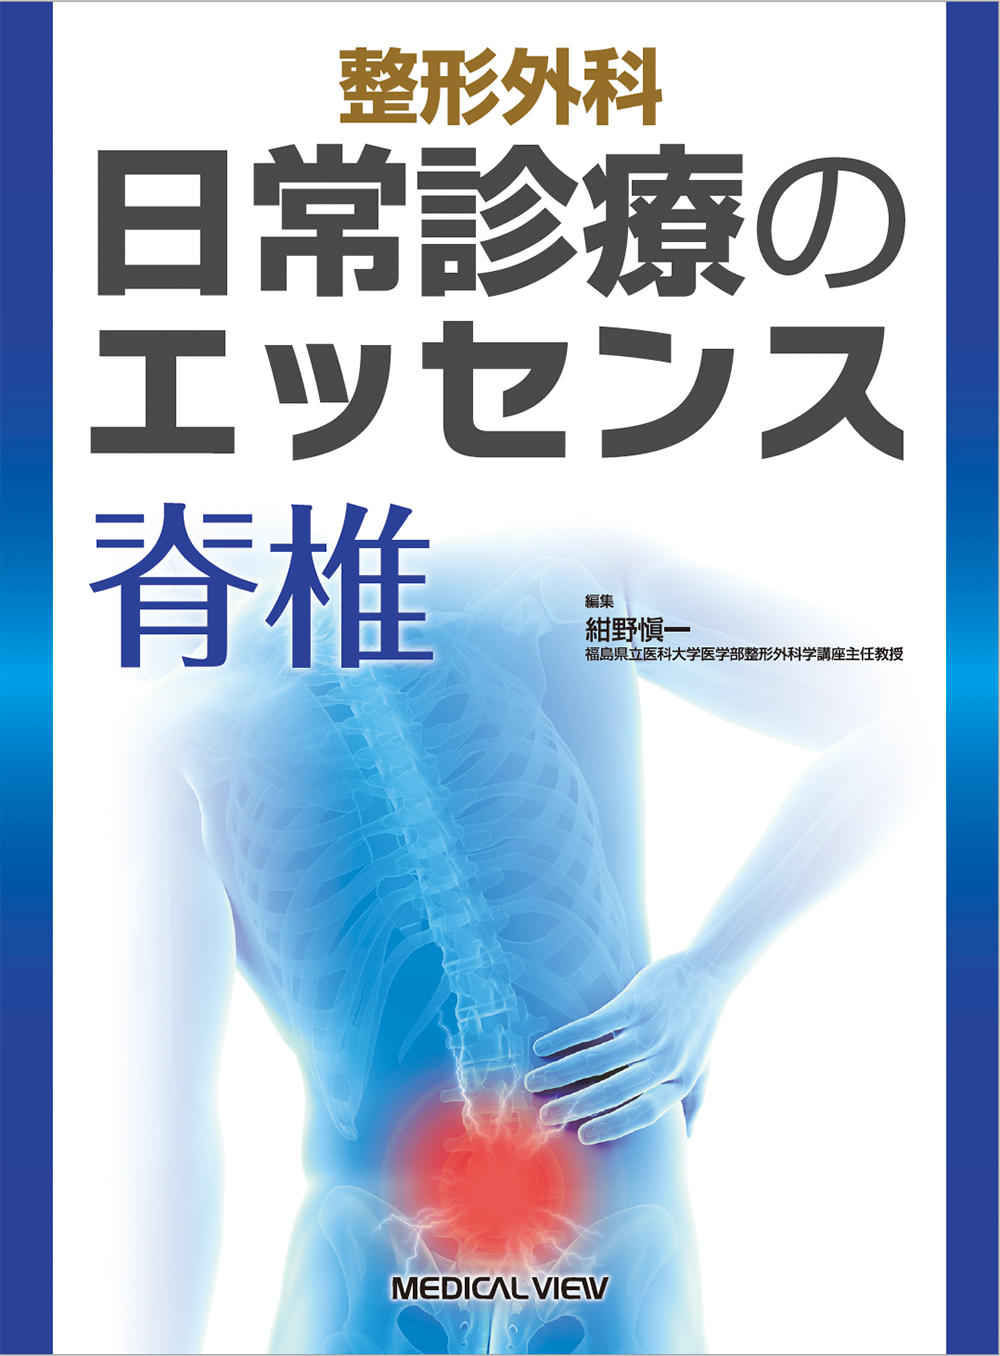 【裁断済】脊椎脊髄外科ビデオライブラリー